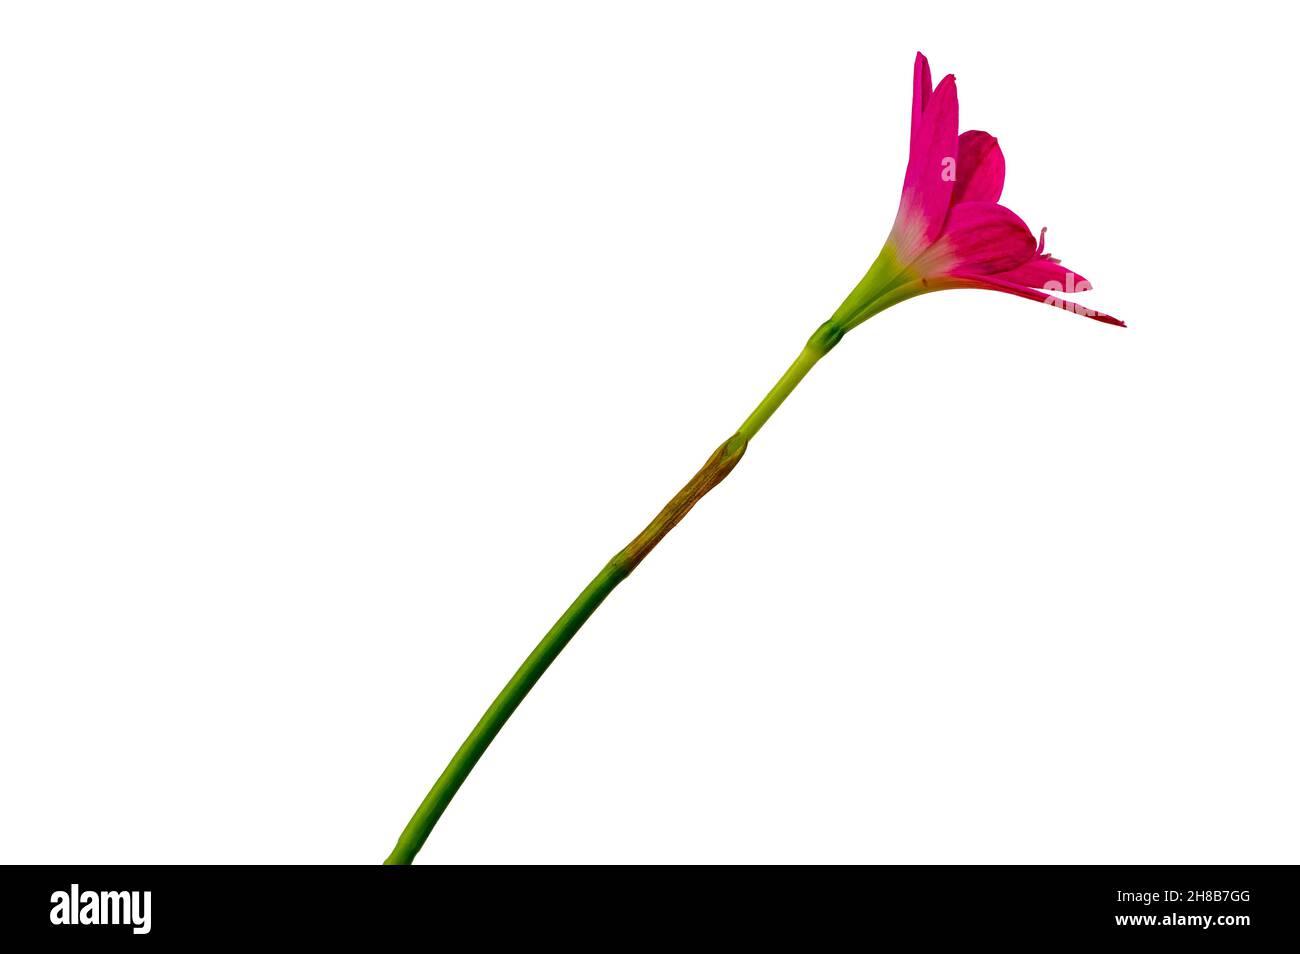 Un fiore di giglio rosa con gambo verde, isolato su sfondo bianco, elementi naturali Foto Stock